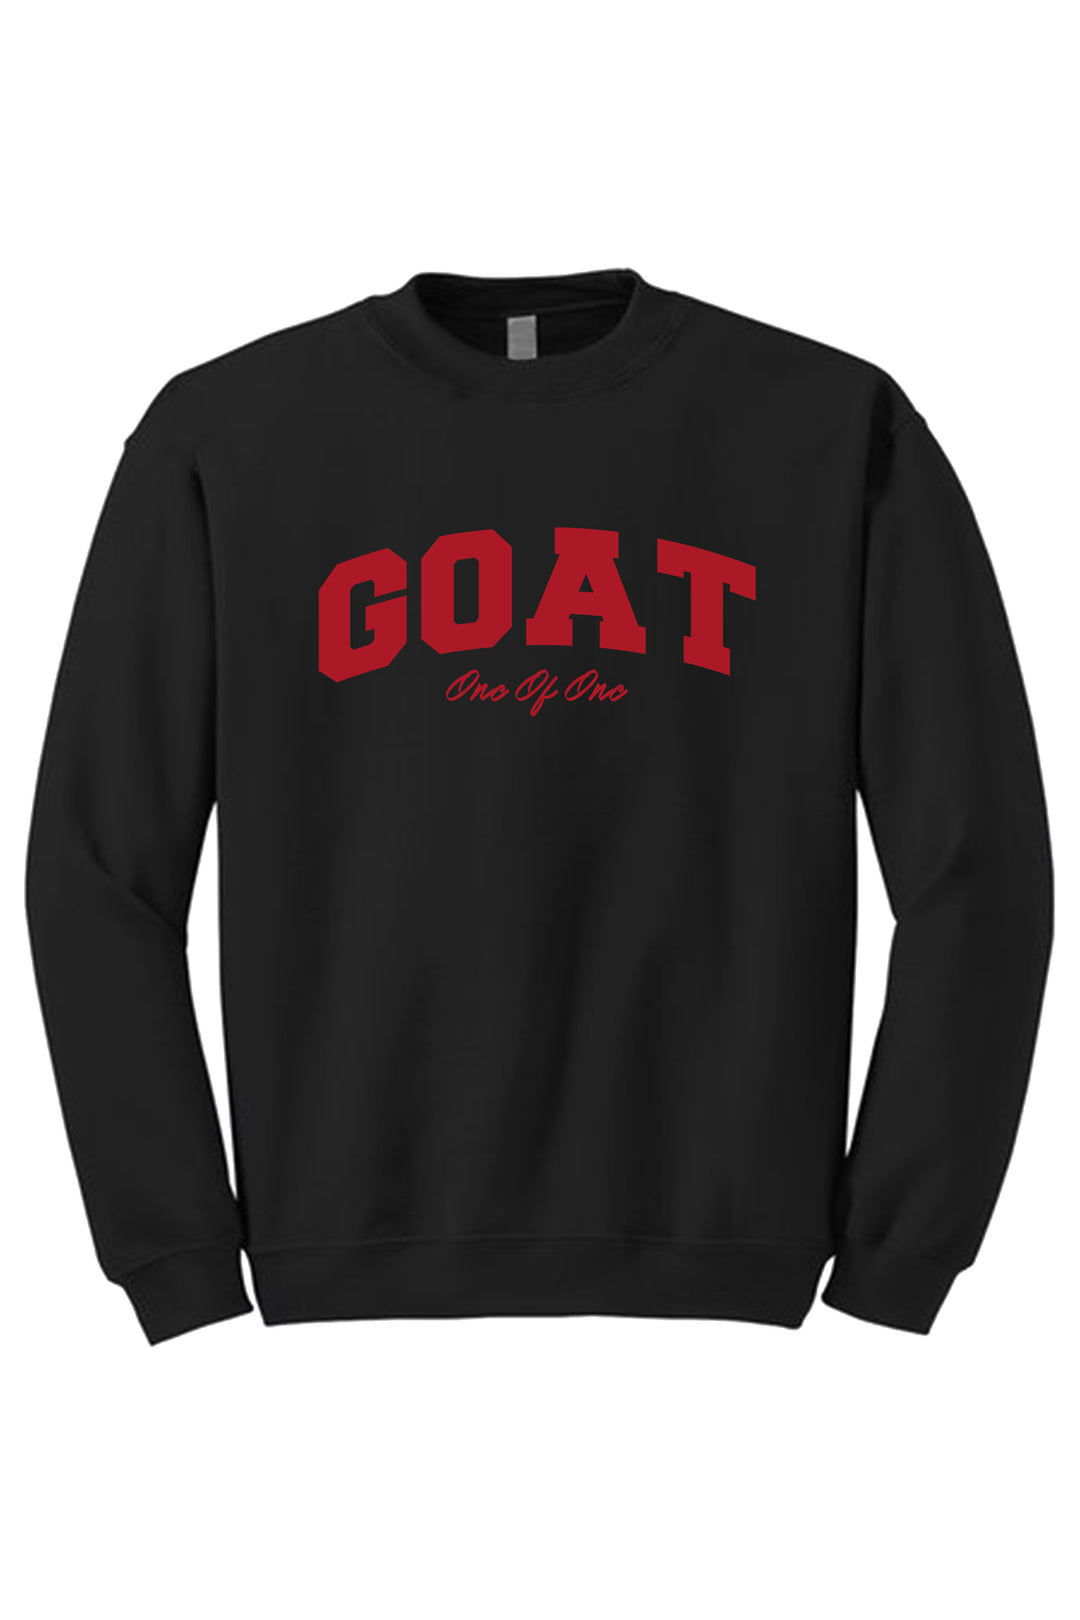 Goat Crewneck Sweatshirt (Red Logo) - Zamage